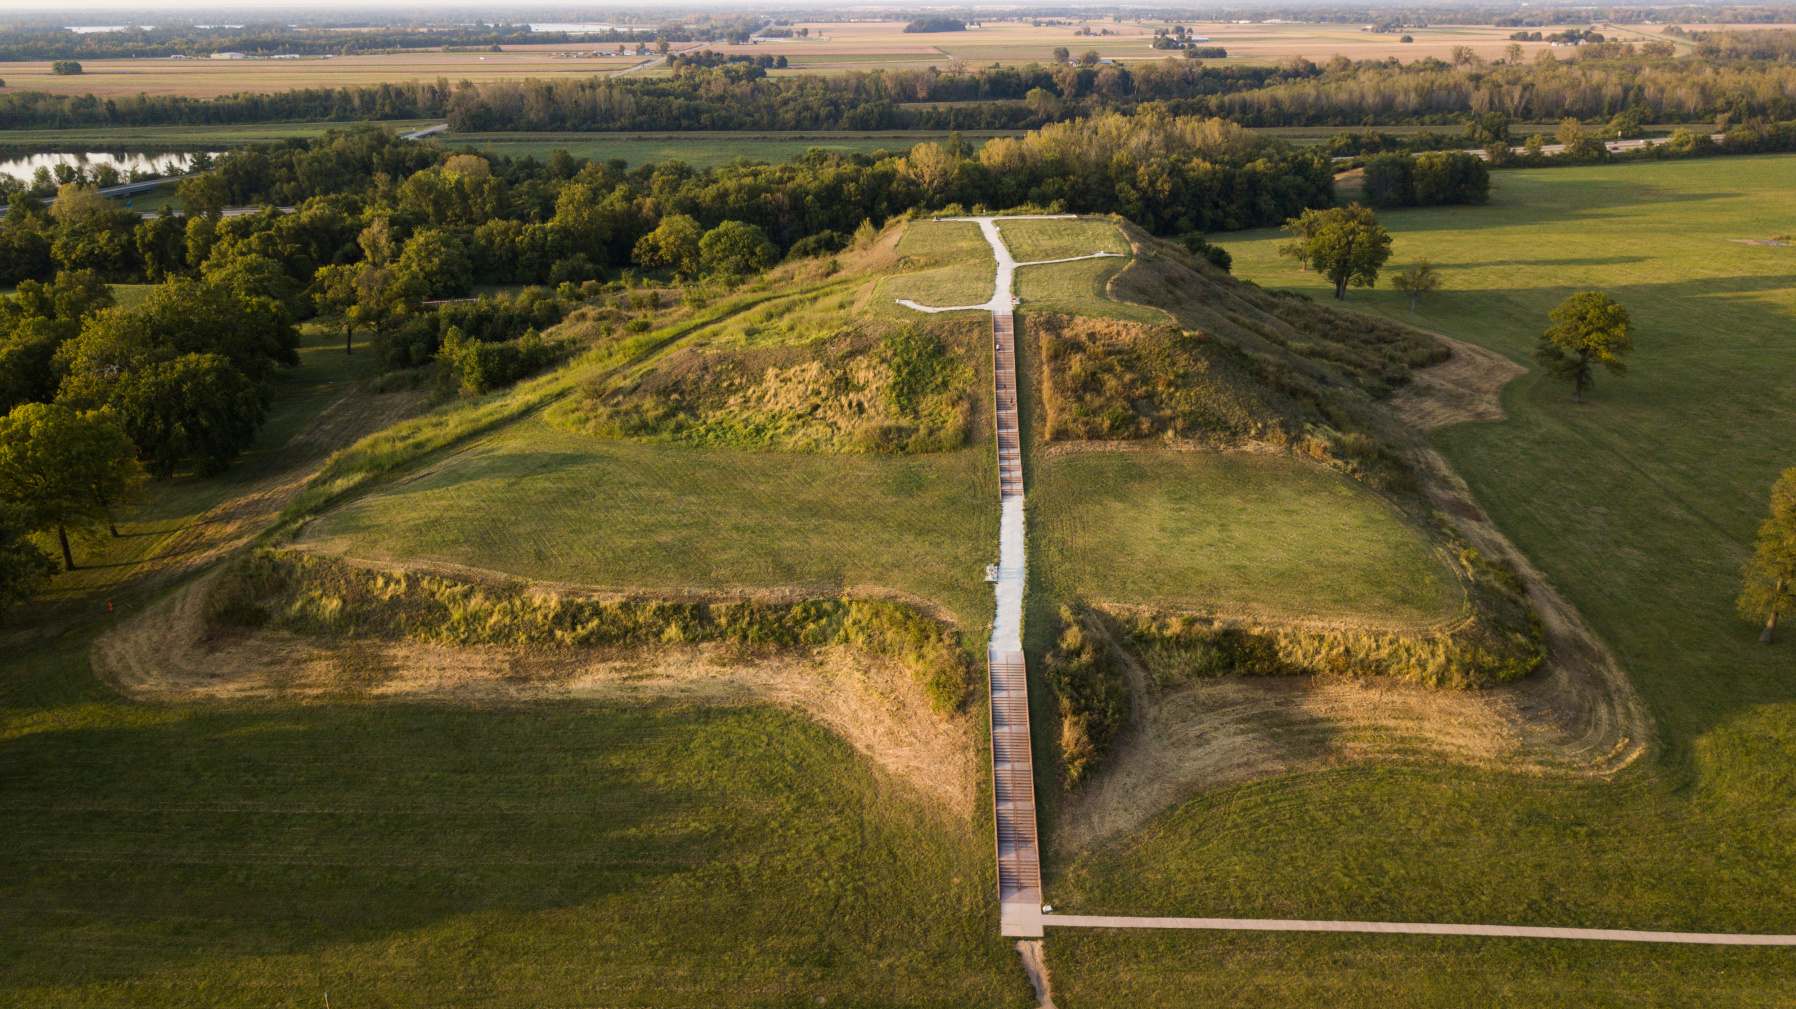 Monks Mound, dibangun antara 950 dan 1100 M dan terletak di Situs Warisan Dunia UNESCO Cahokia Mounds dekat Collinsville, Illinois, adalah pekerjaan tanah pra-Columbus terbesar di Amerika di utara Mesoamerika. Sejumlah budaya pra-Columbus secara kolektif disebut "Pembangun Gundukan".